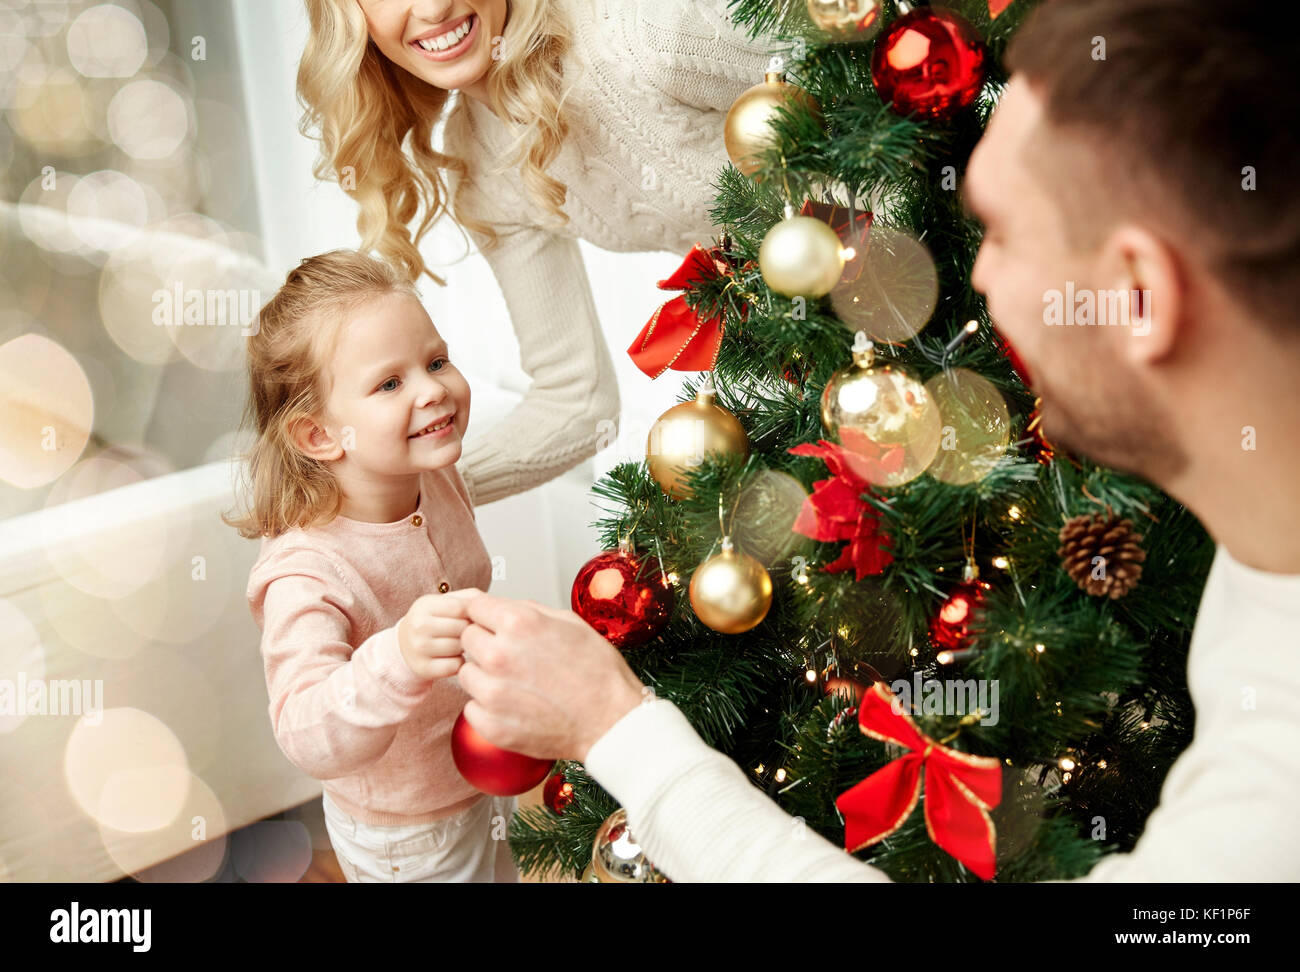 happy family decorating christmas tree Stock Photo